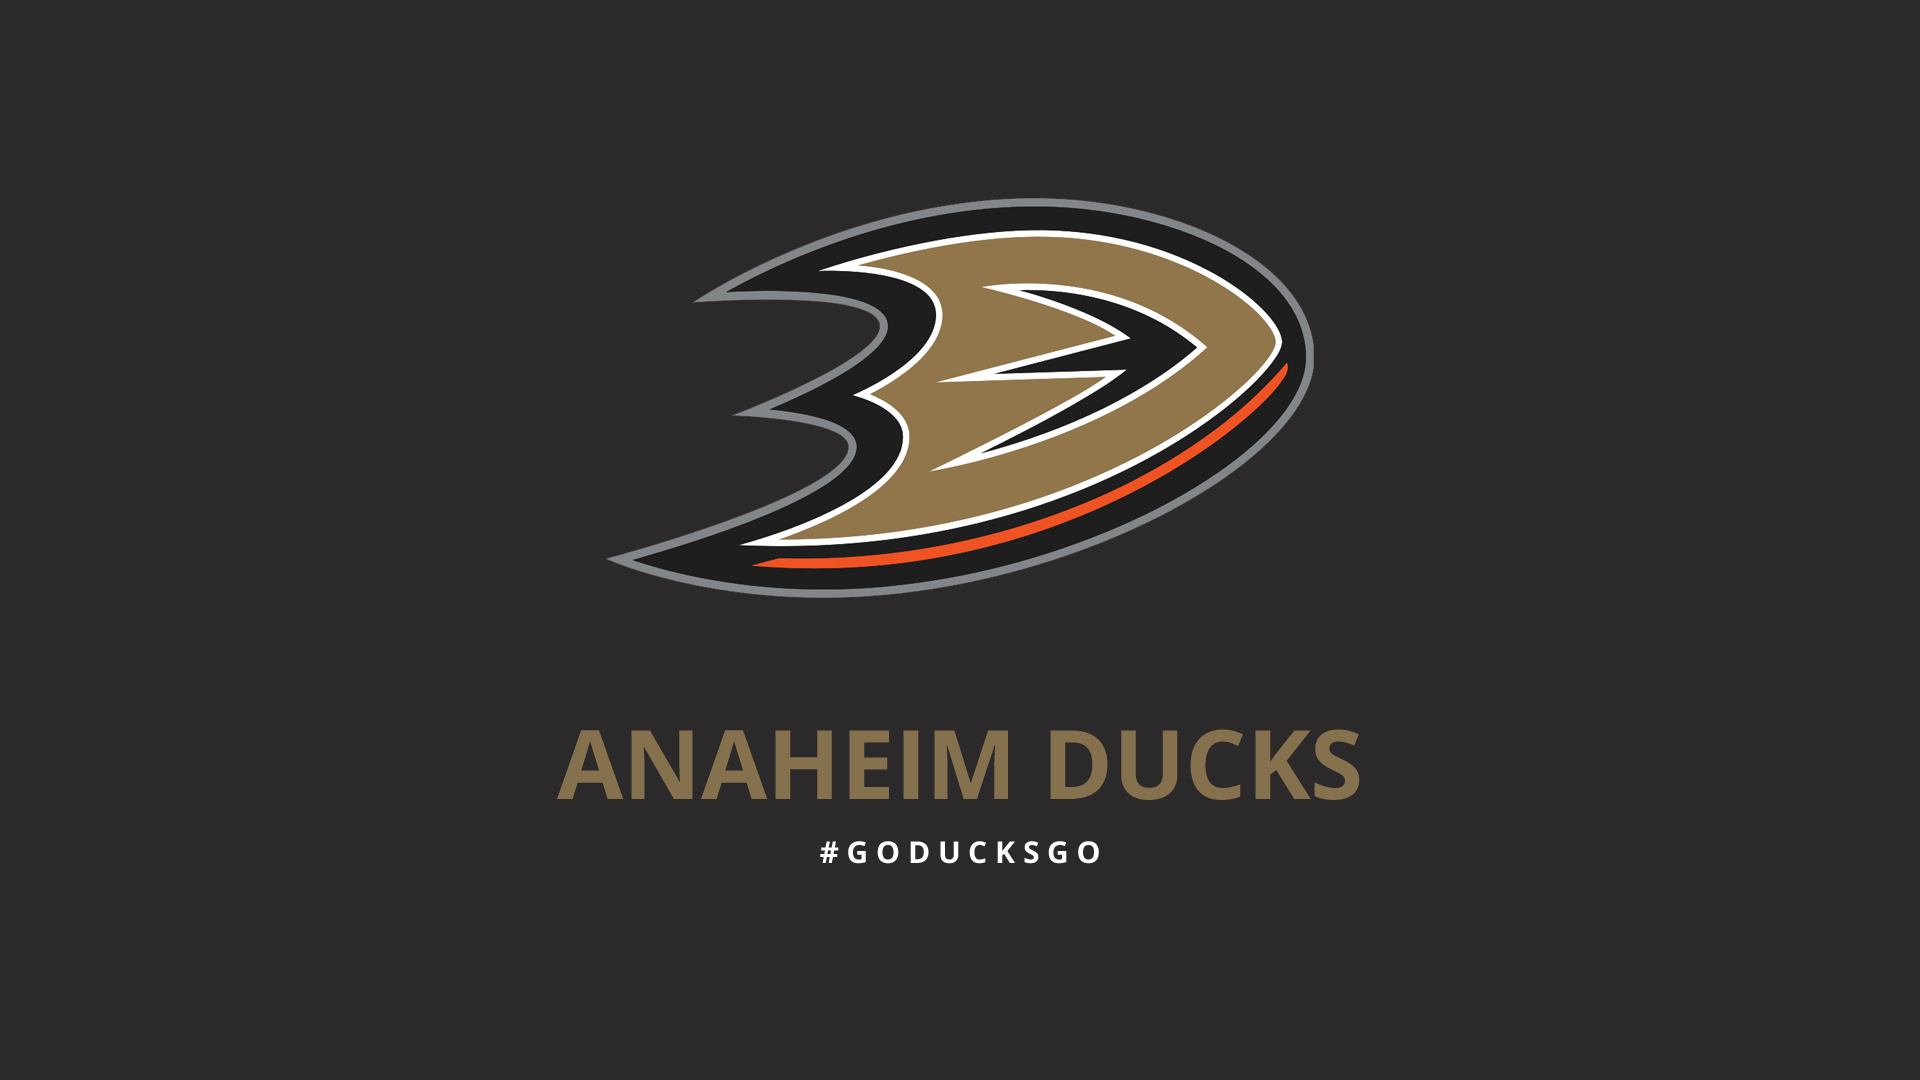 Minimalist Anaheim Ducks wallpaper by lfiore on